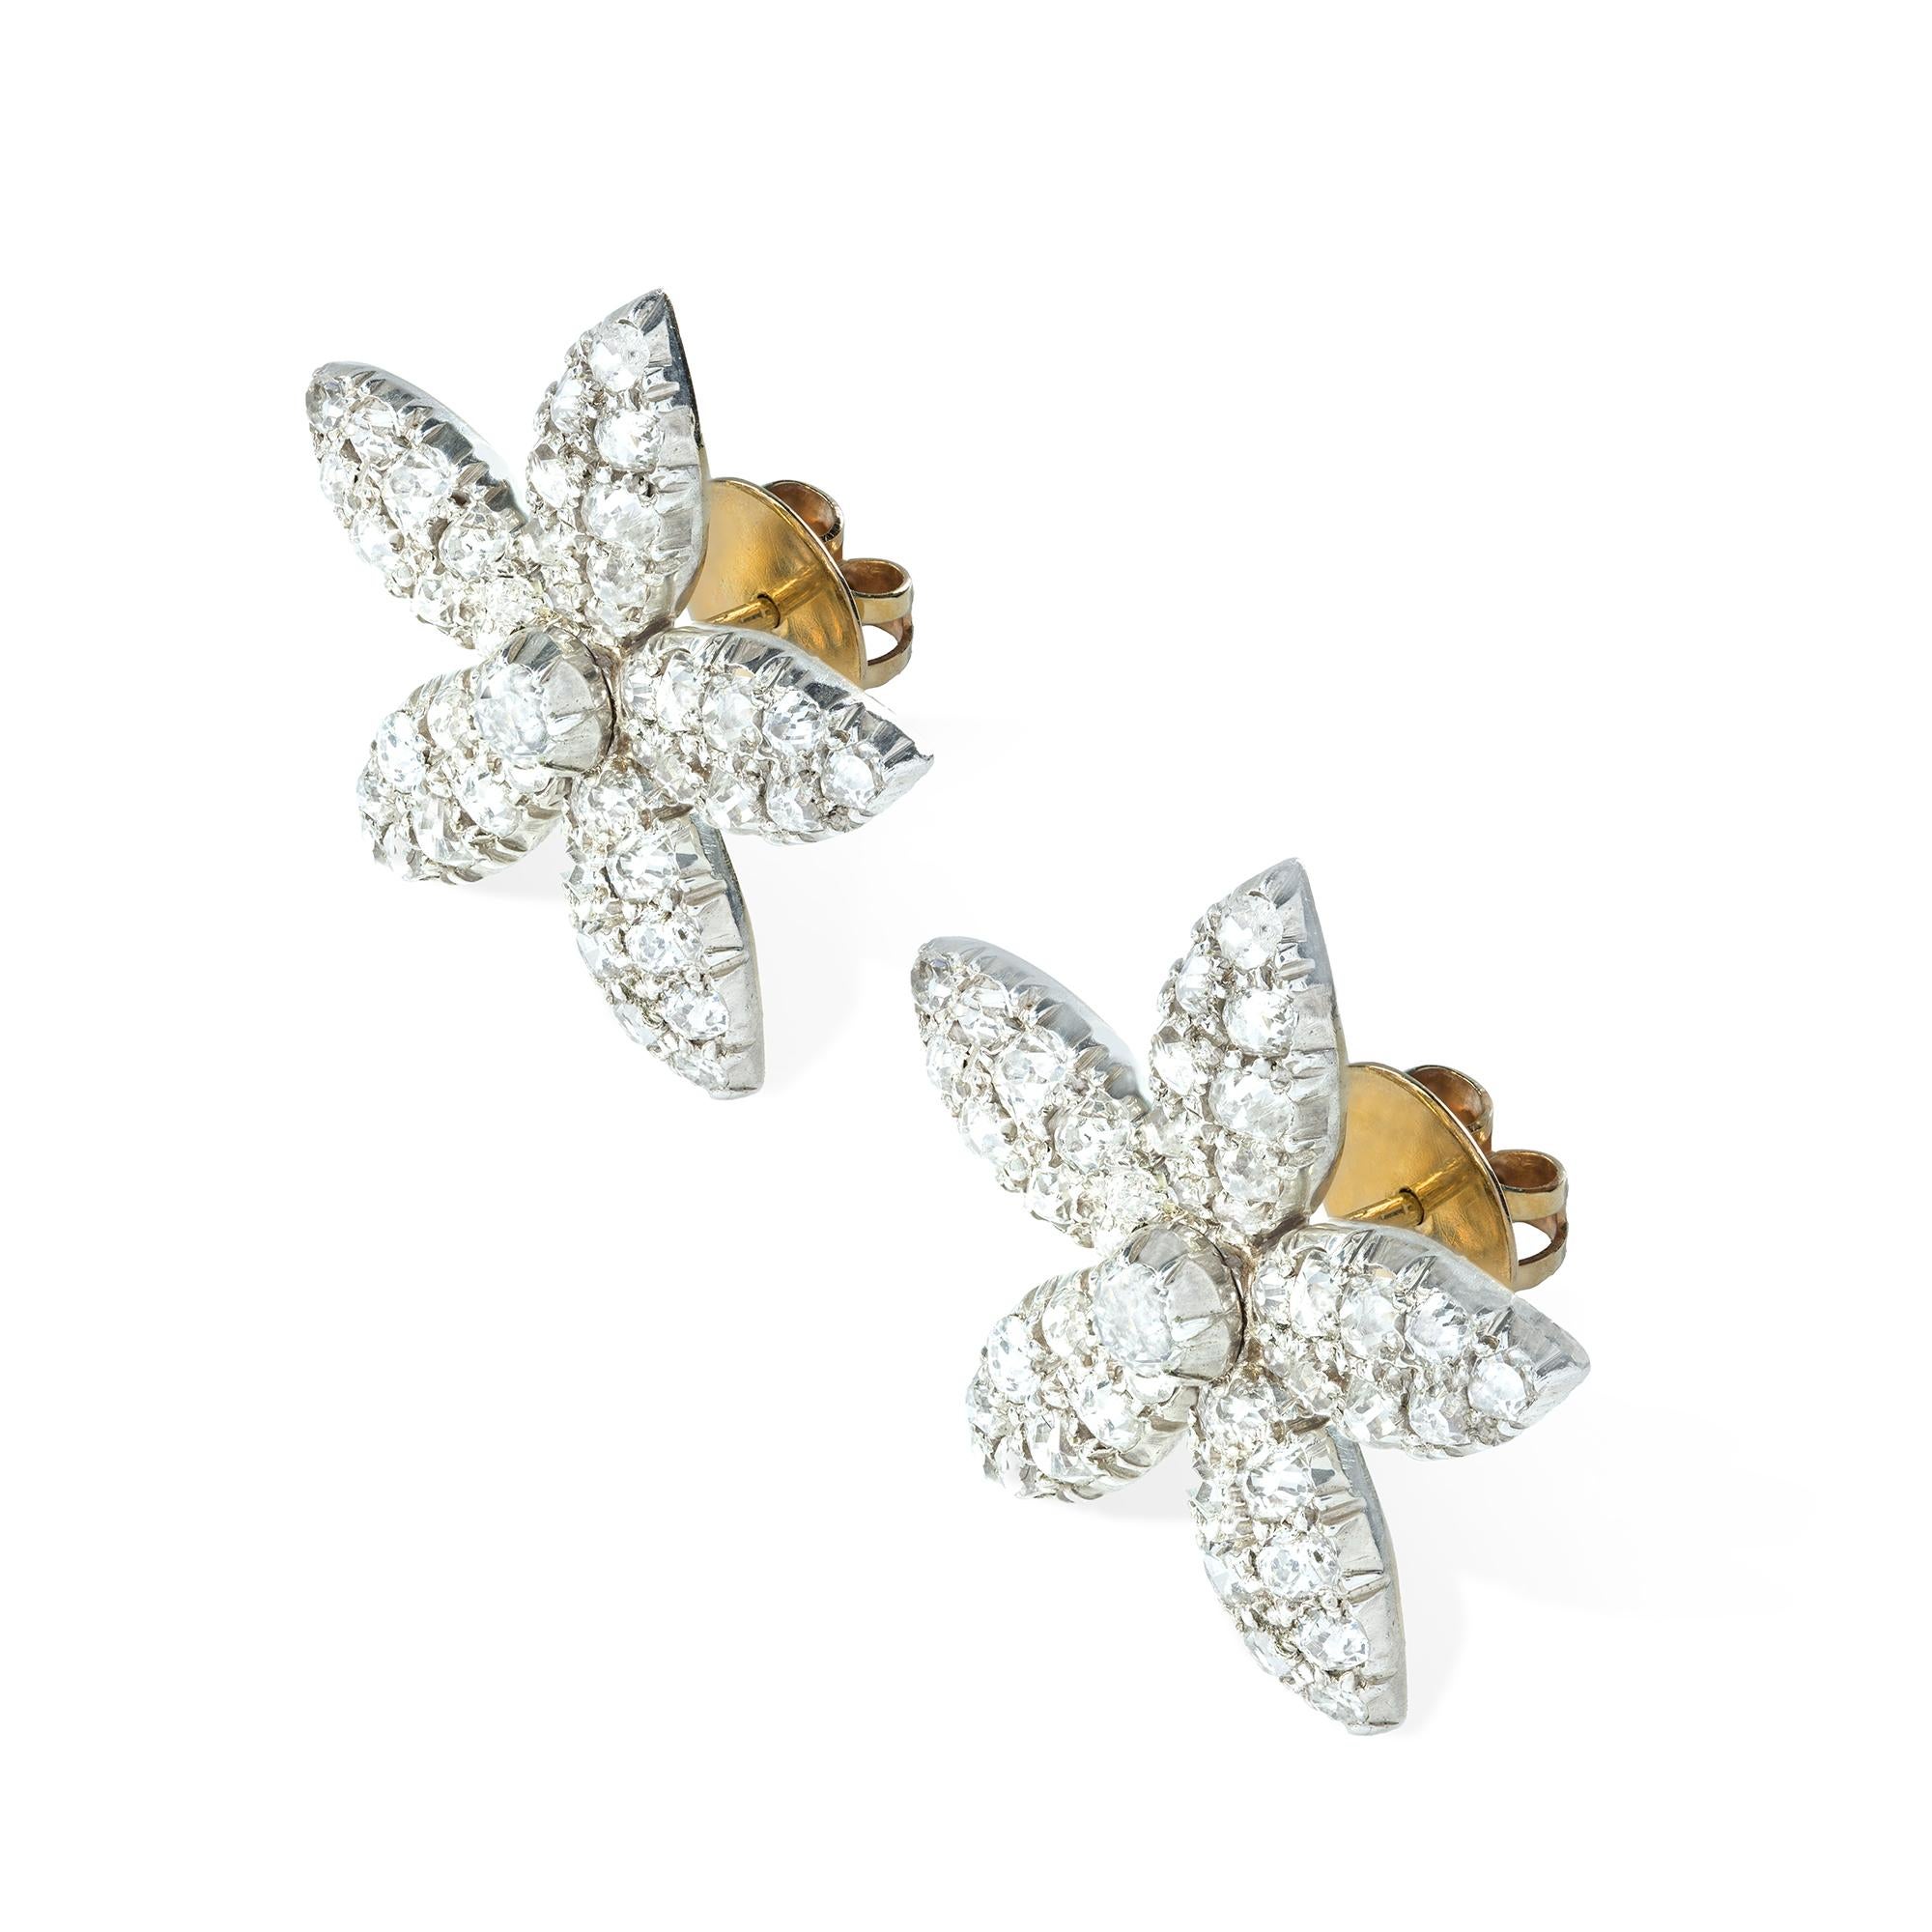 Ein Paar viktorianische Jasmin-Diamant-Ohrringe, jeweils im Design eines fünfblättrigen diamantbesetzten Jasminkopfes mit einem zentralen alten Brillanten, die Diamanten wiegen schätzungsweise insgesamt ca. 5 Karat, alle mit Cut-Down-Fassung in